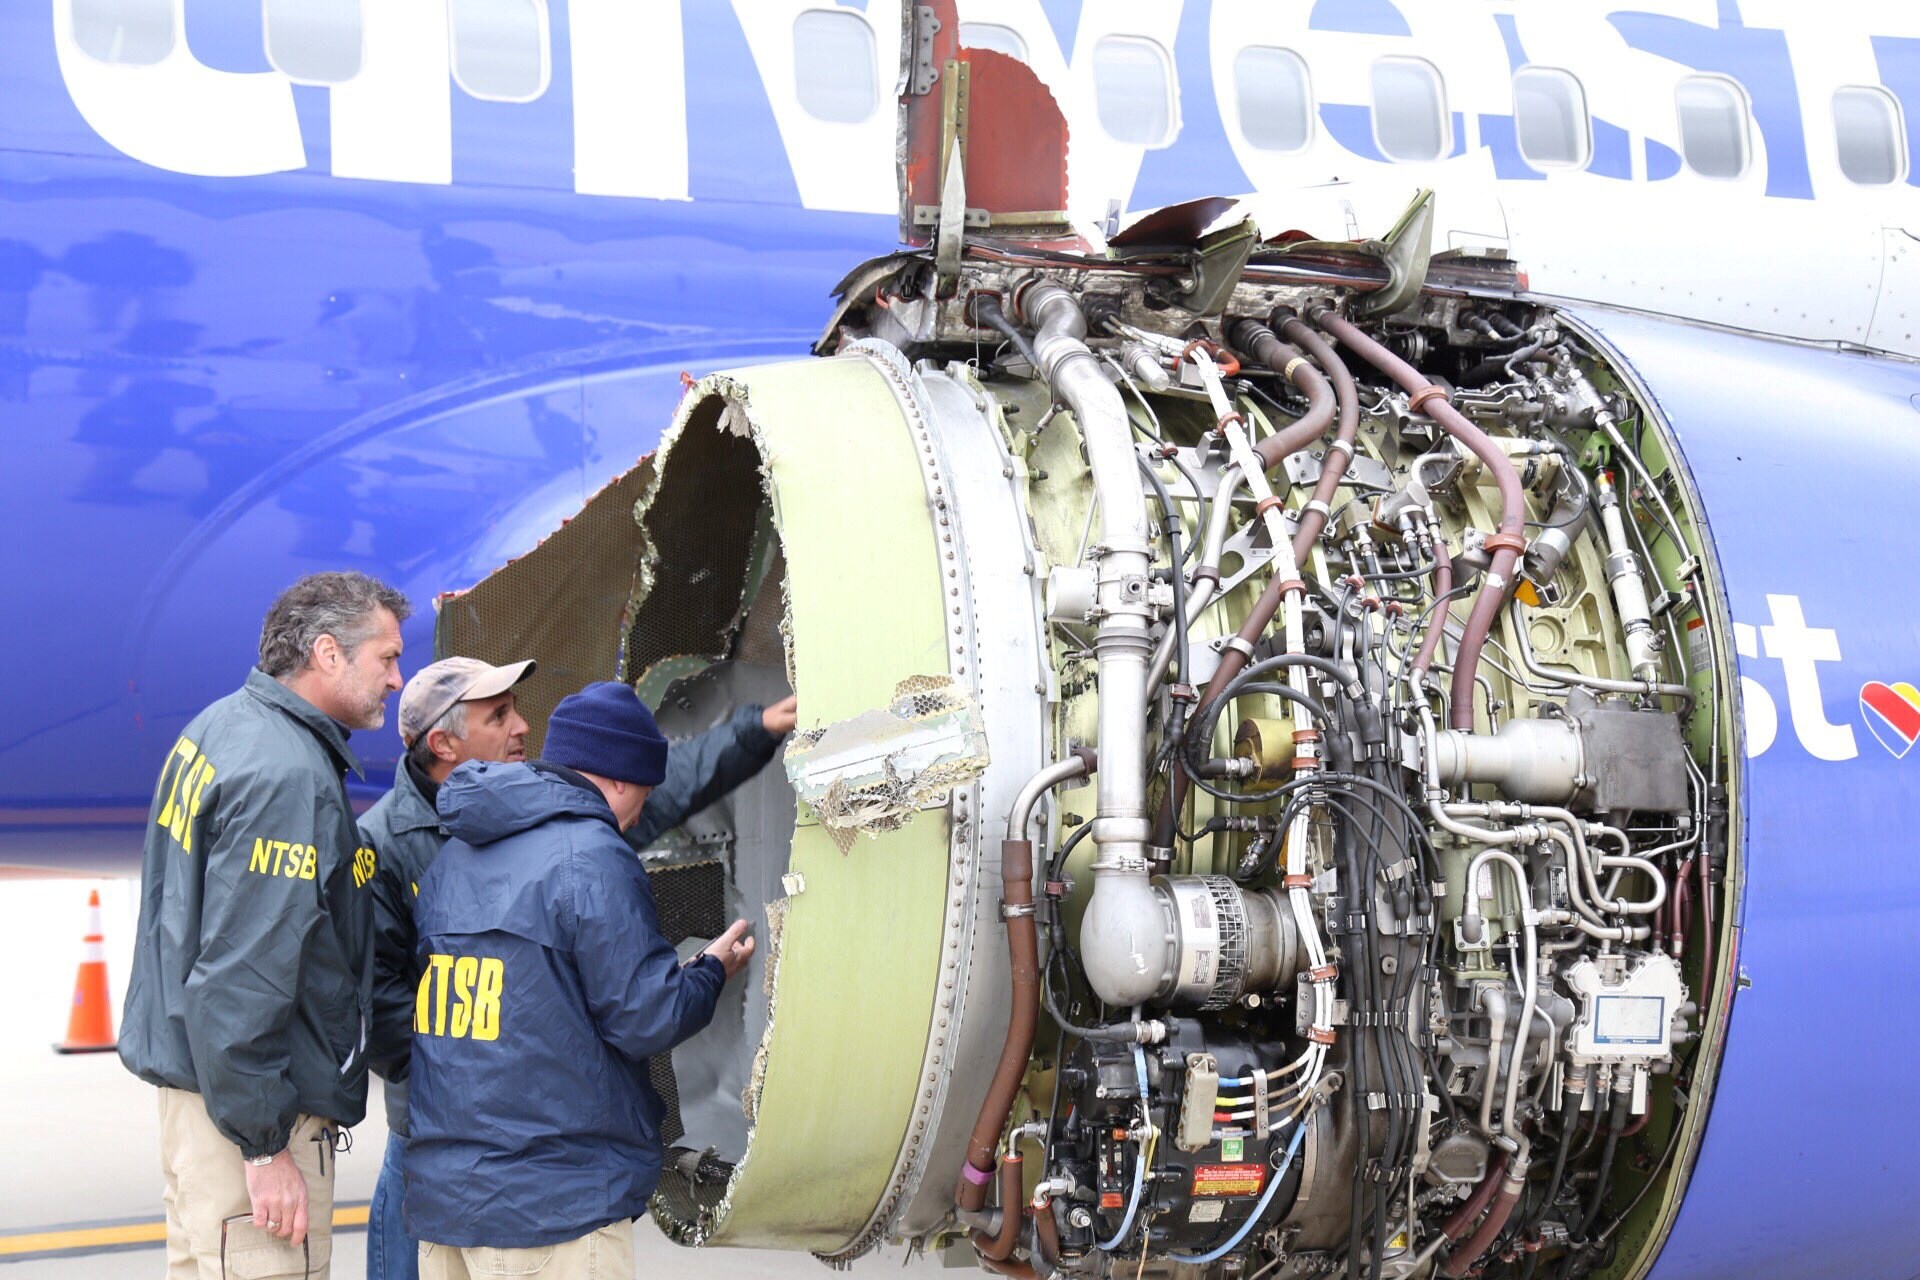 Honderden Boeings blijven aan de grond na ongeval waarbij vrouw uit vliegtuig werd gezogen